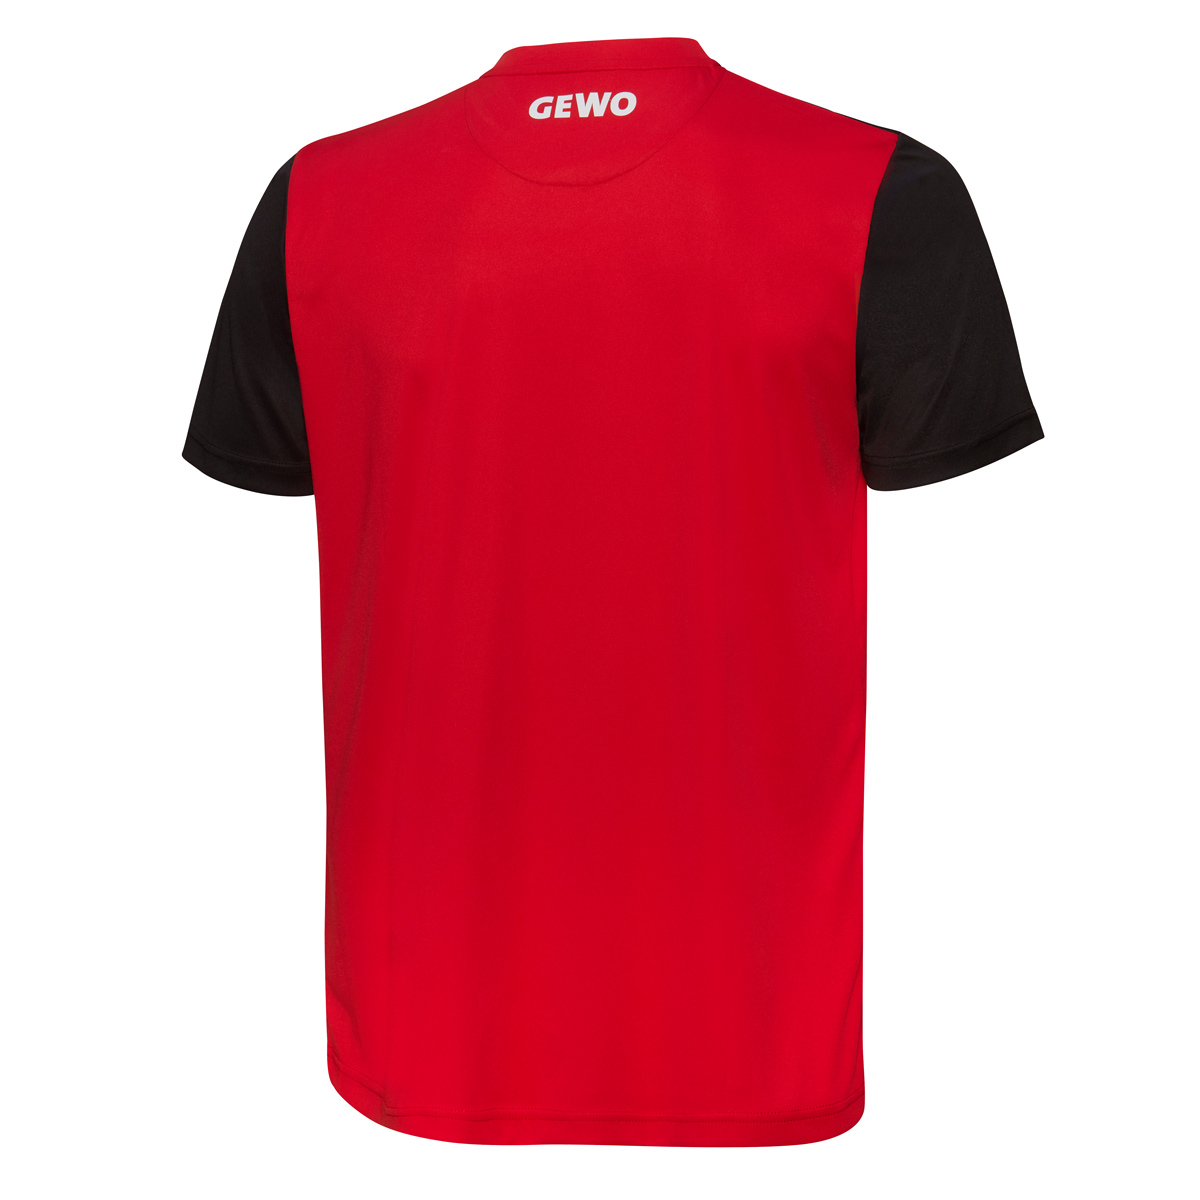 GEWO Shirt Zamora rot/schwarz XXXXS